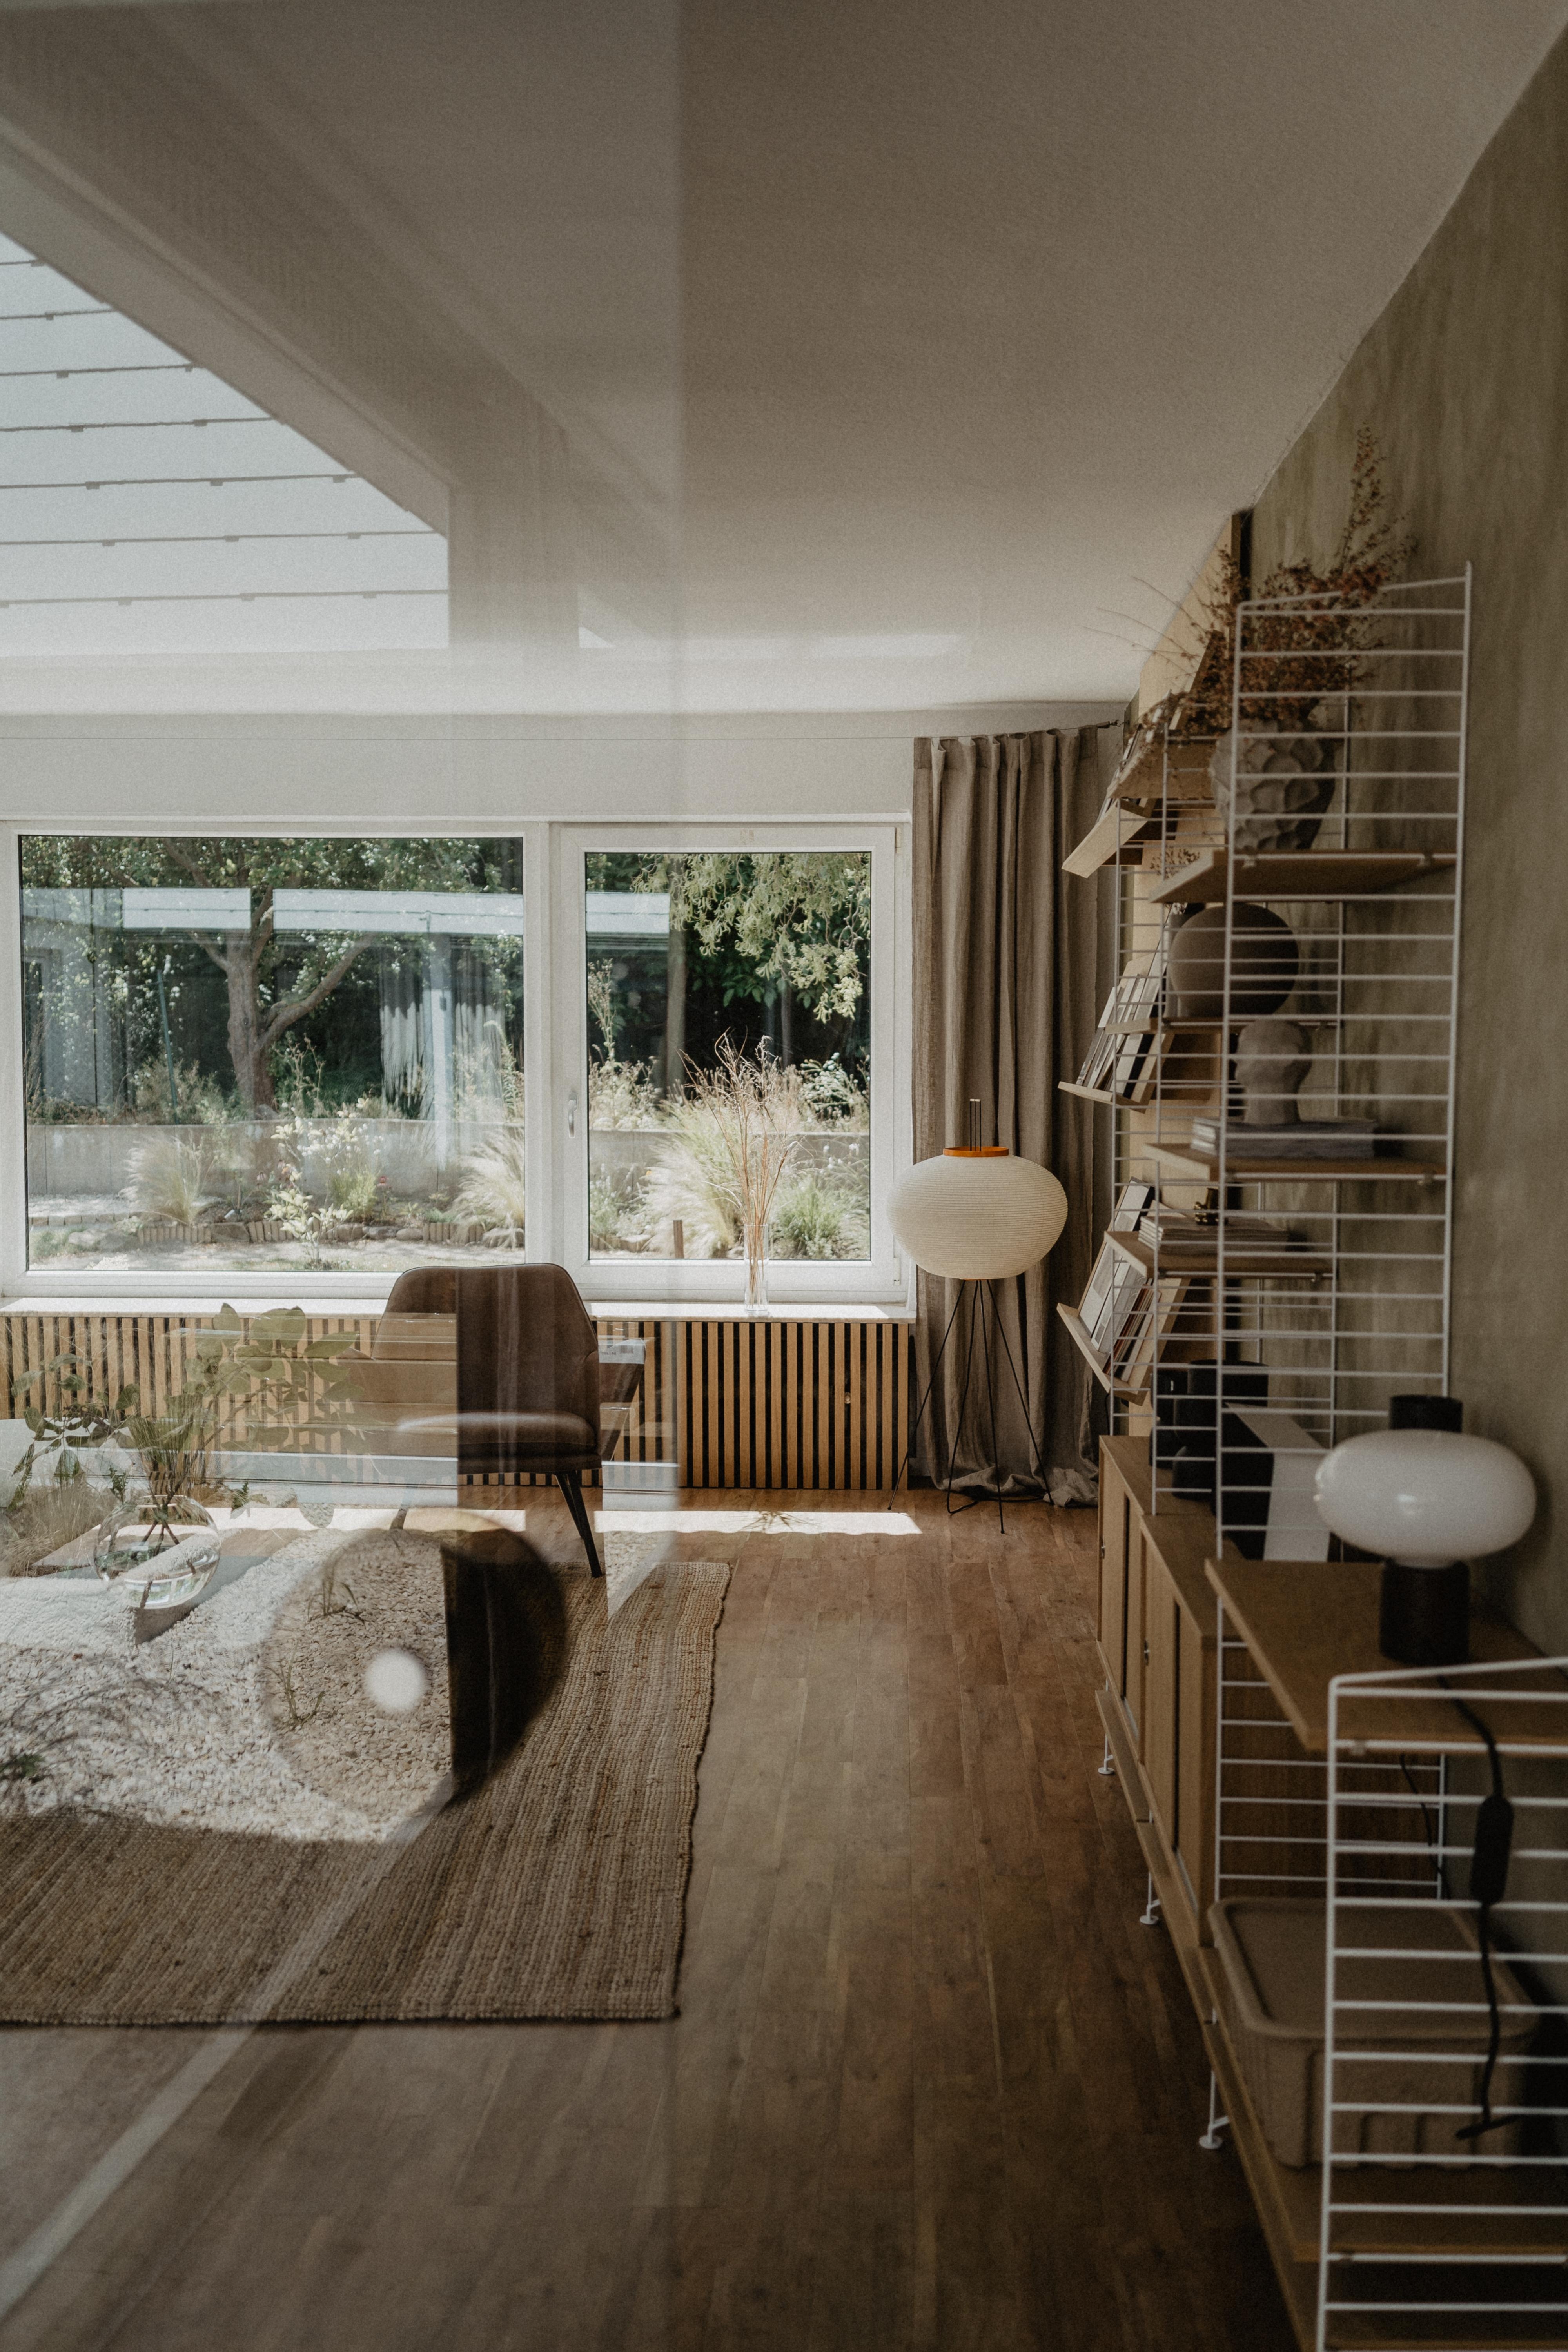 Schönen Abend☀️ #wohnzimmer #hausbau #renovierung #interiordesign #akari #stringfurniture #vitra #retro #midcenturymodern